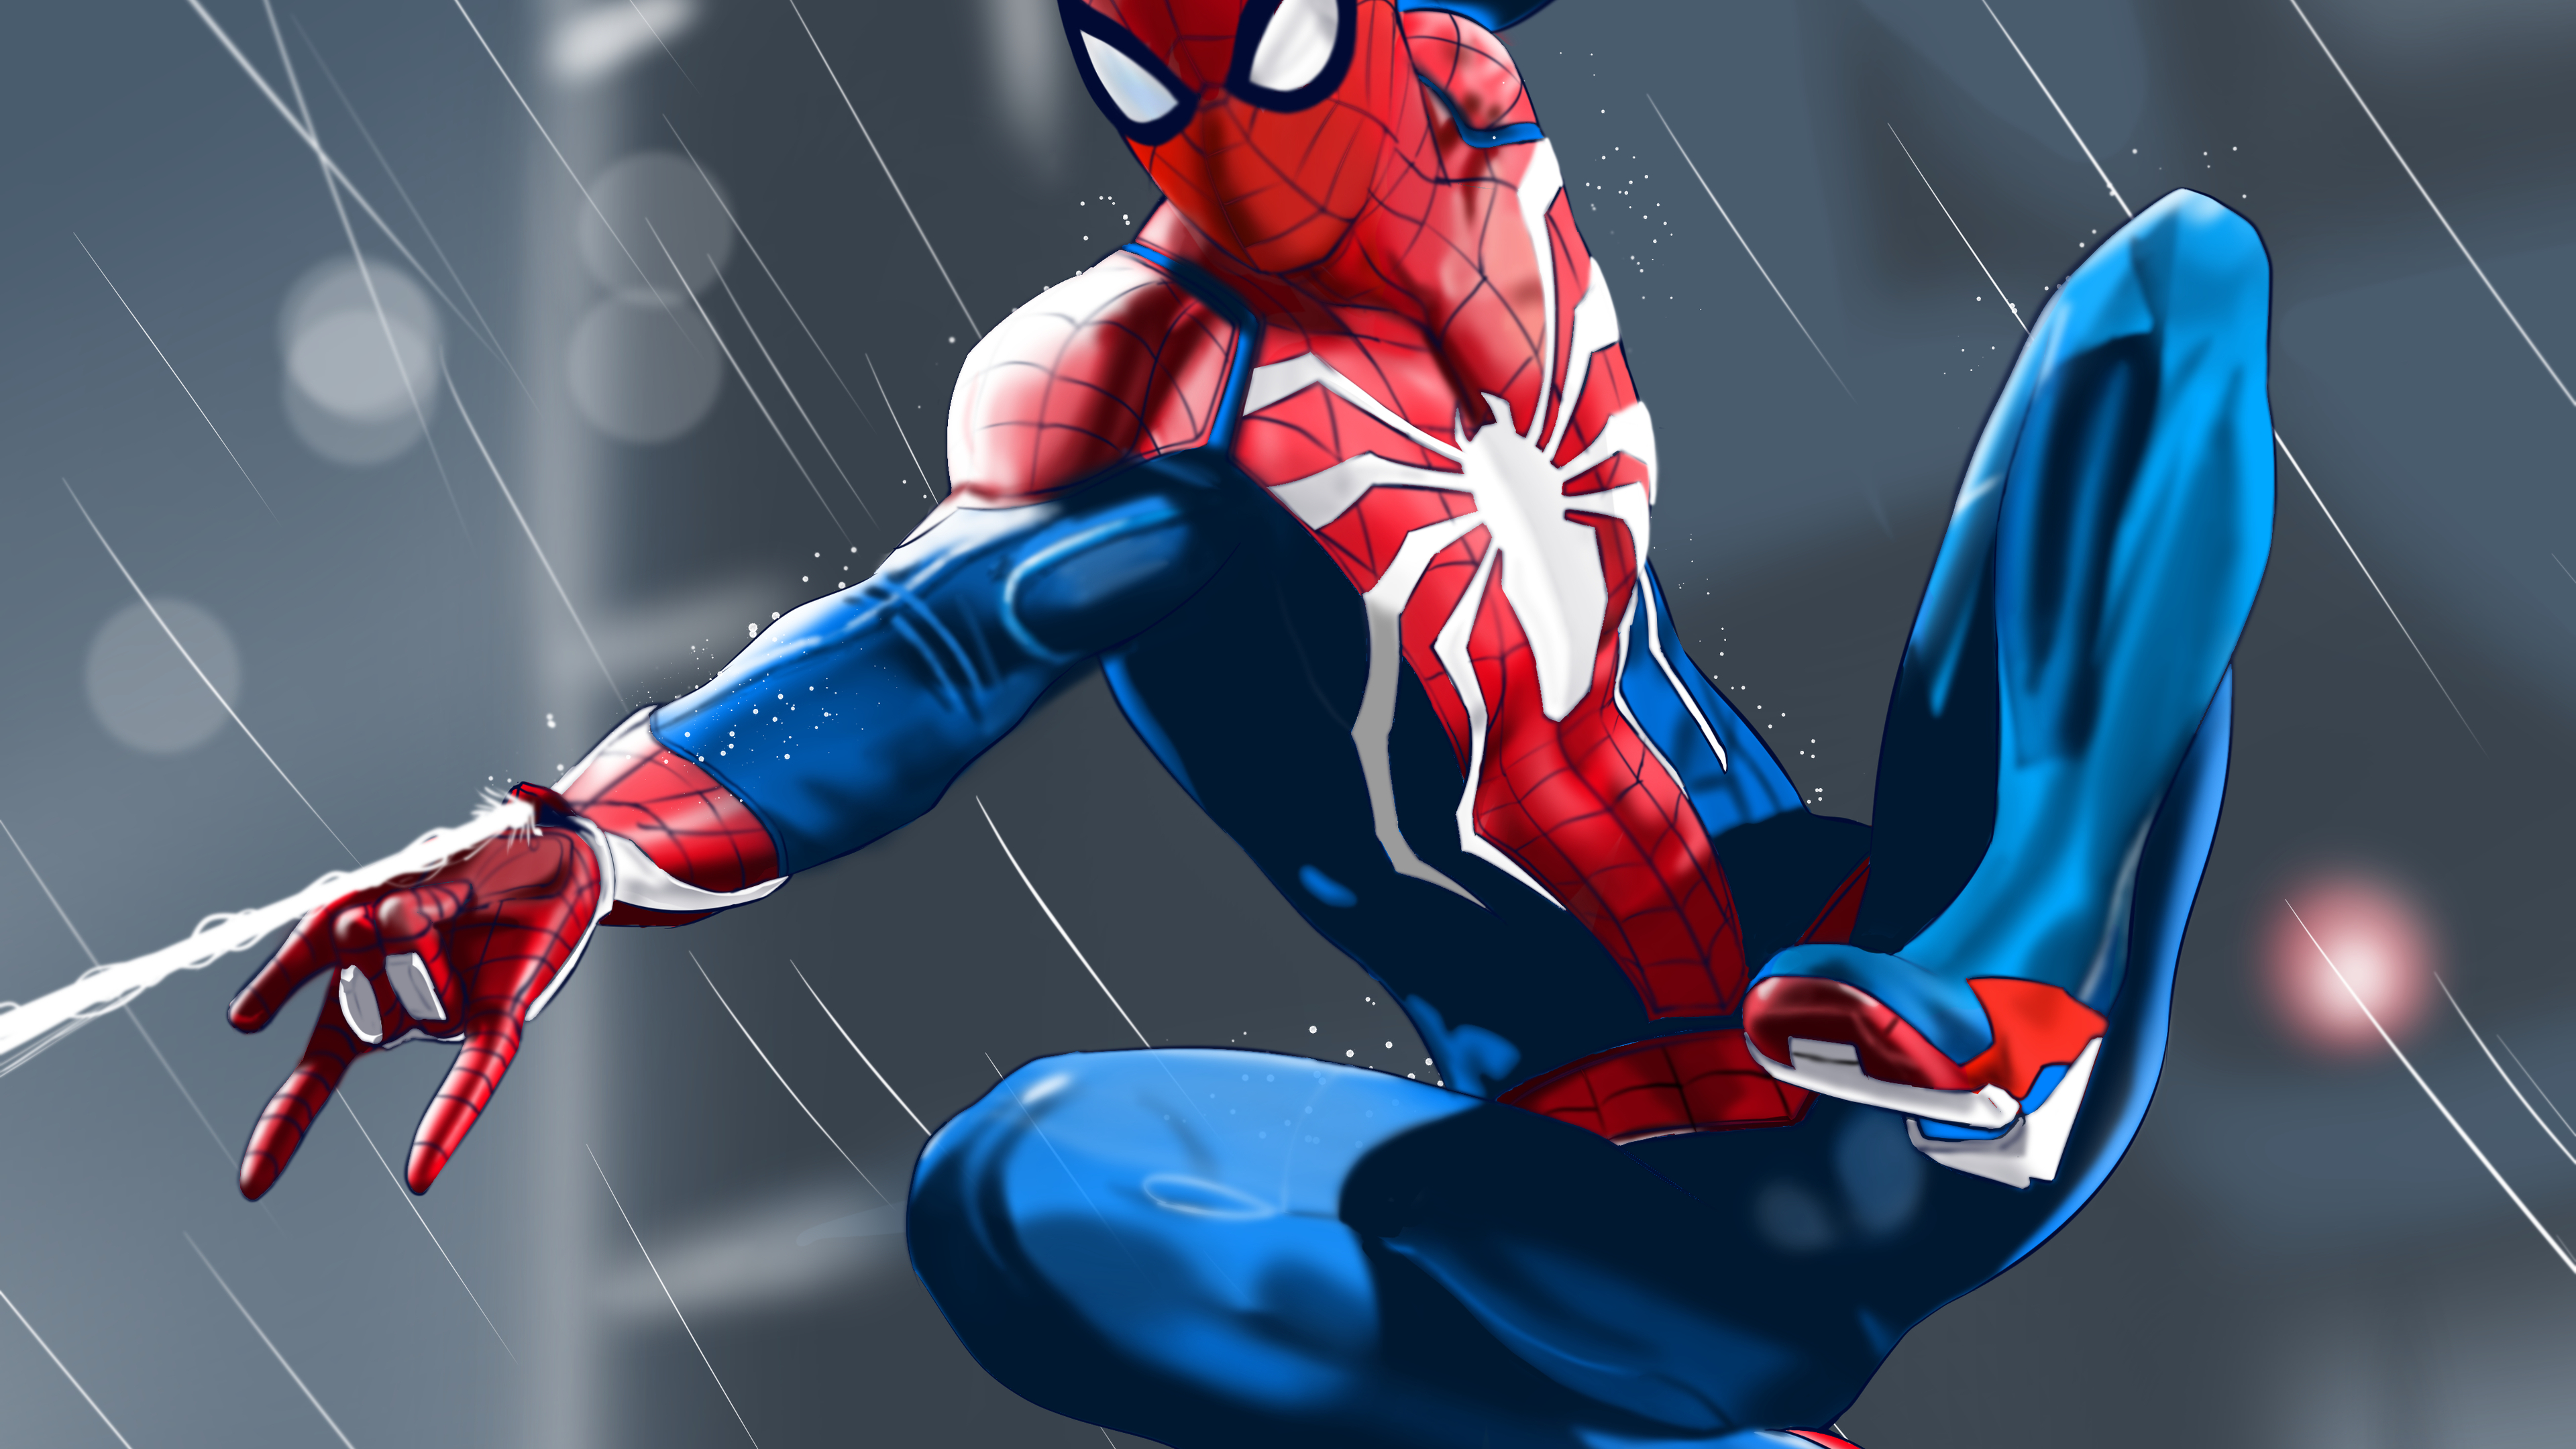 Spiderman Wallpaper Hd - Bios Pics